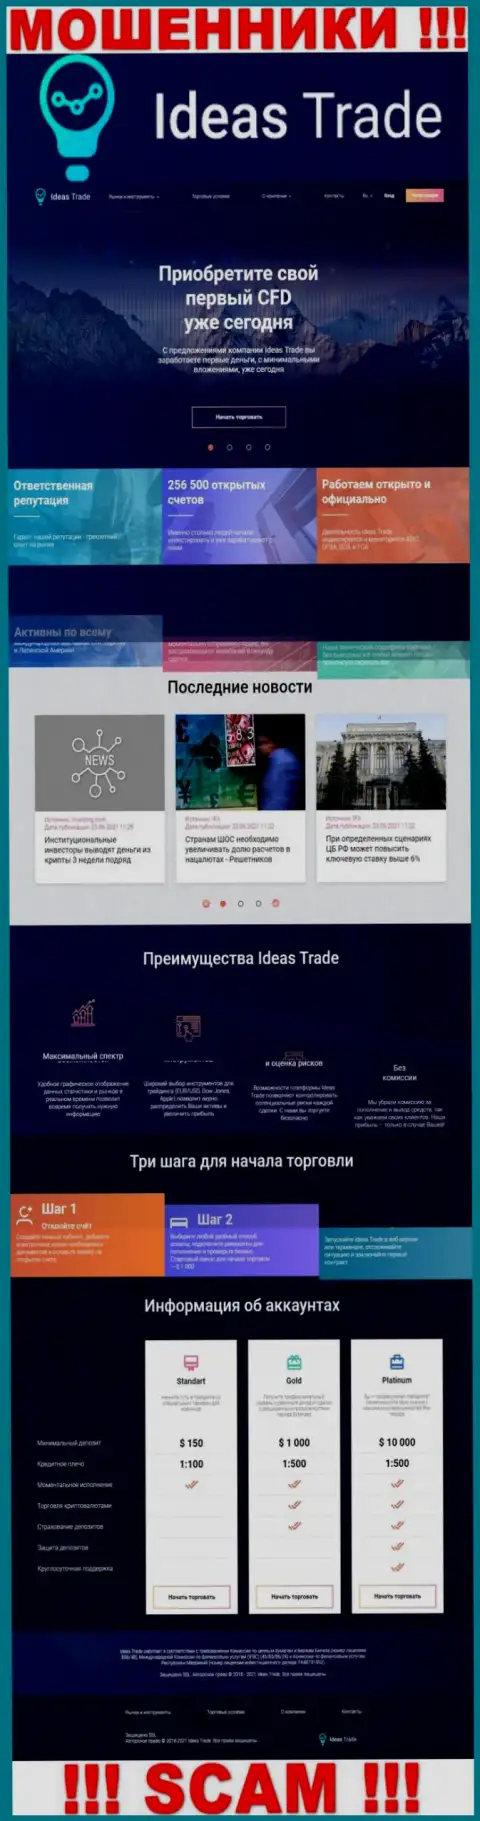 Официальный web-портал мошенников Ideas Trade